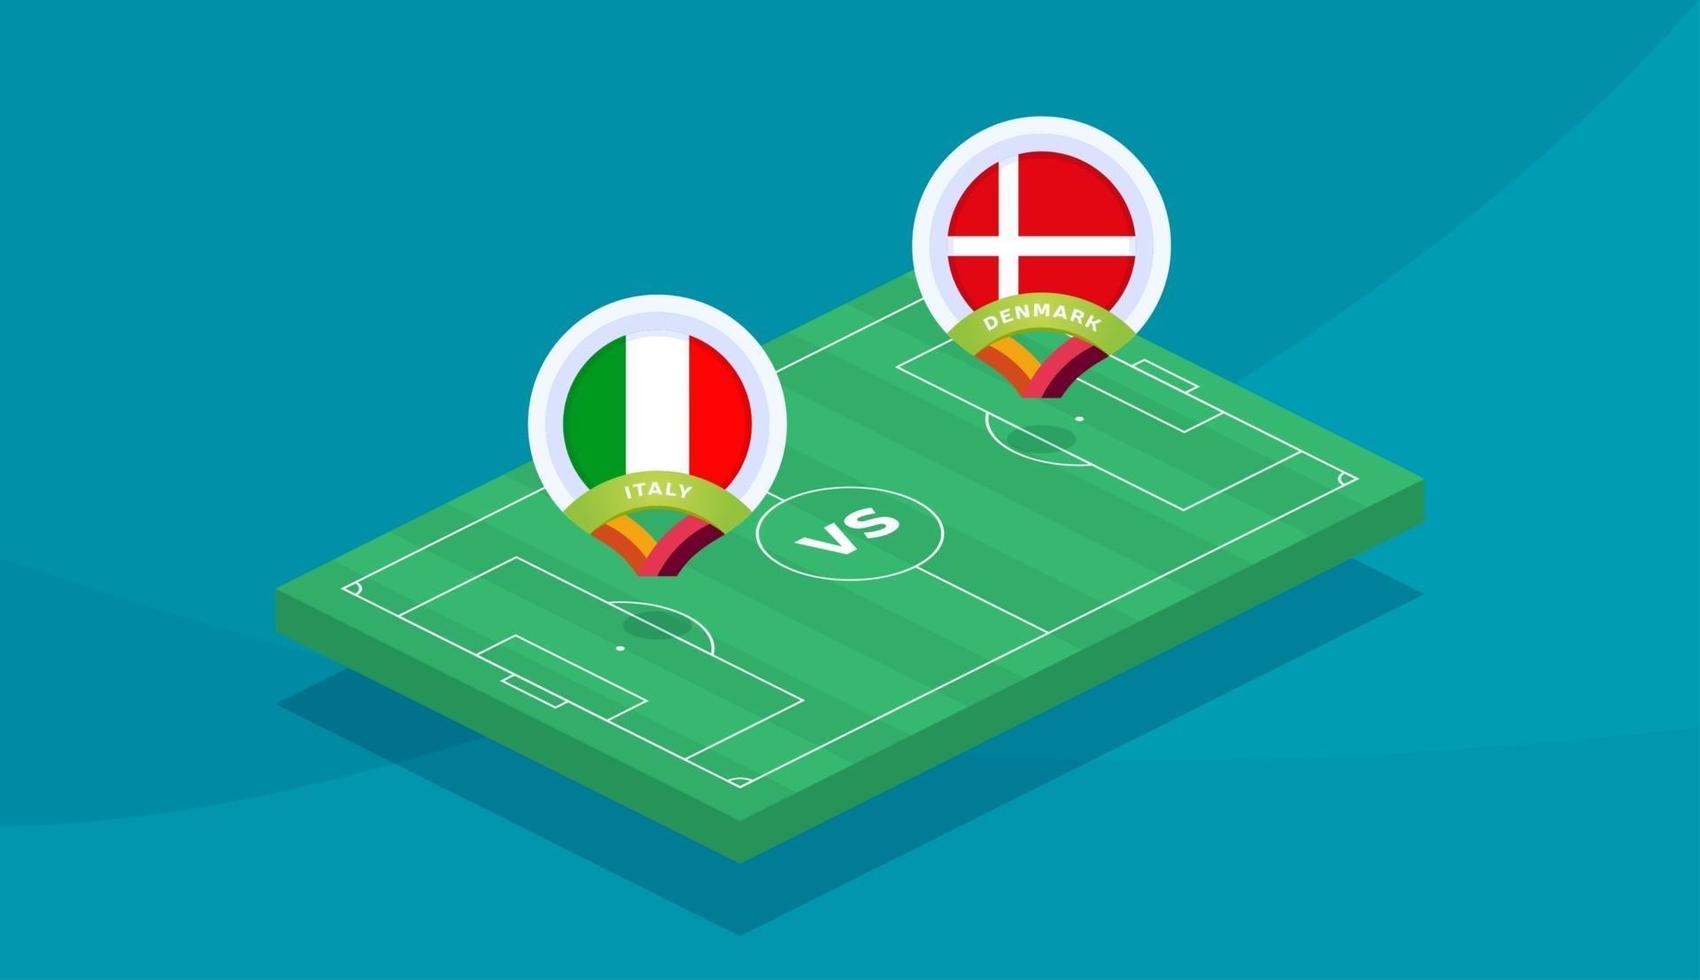 Italien vs Danmark match vektor illustration fotboll 2020 mästerskap